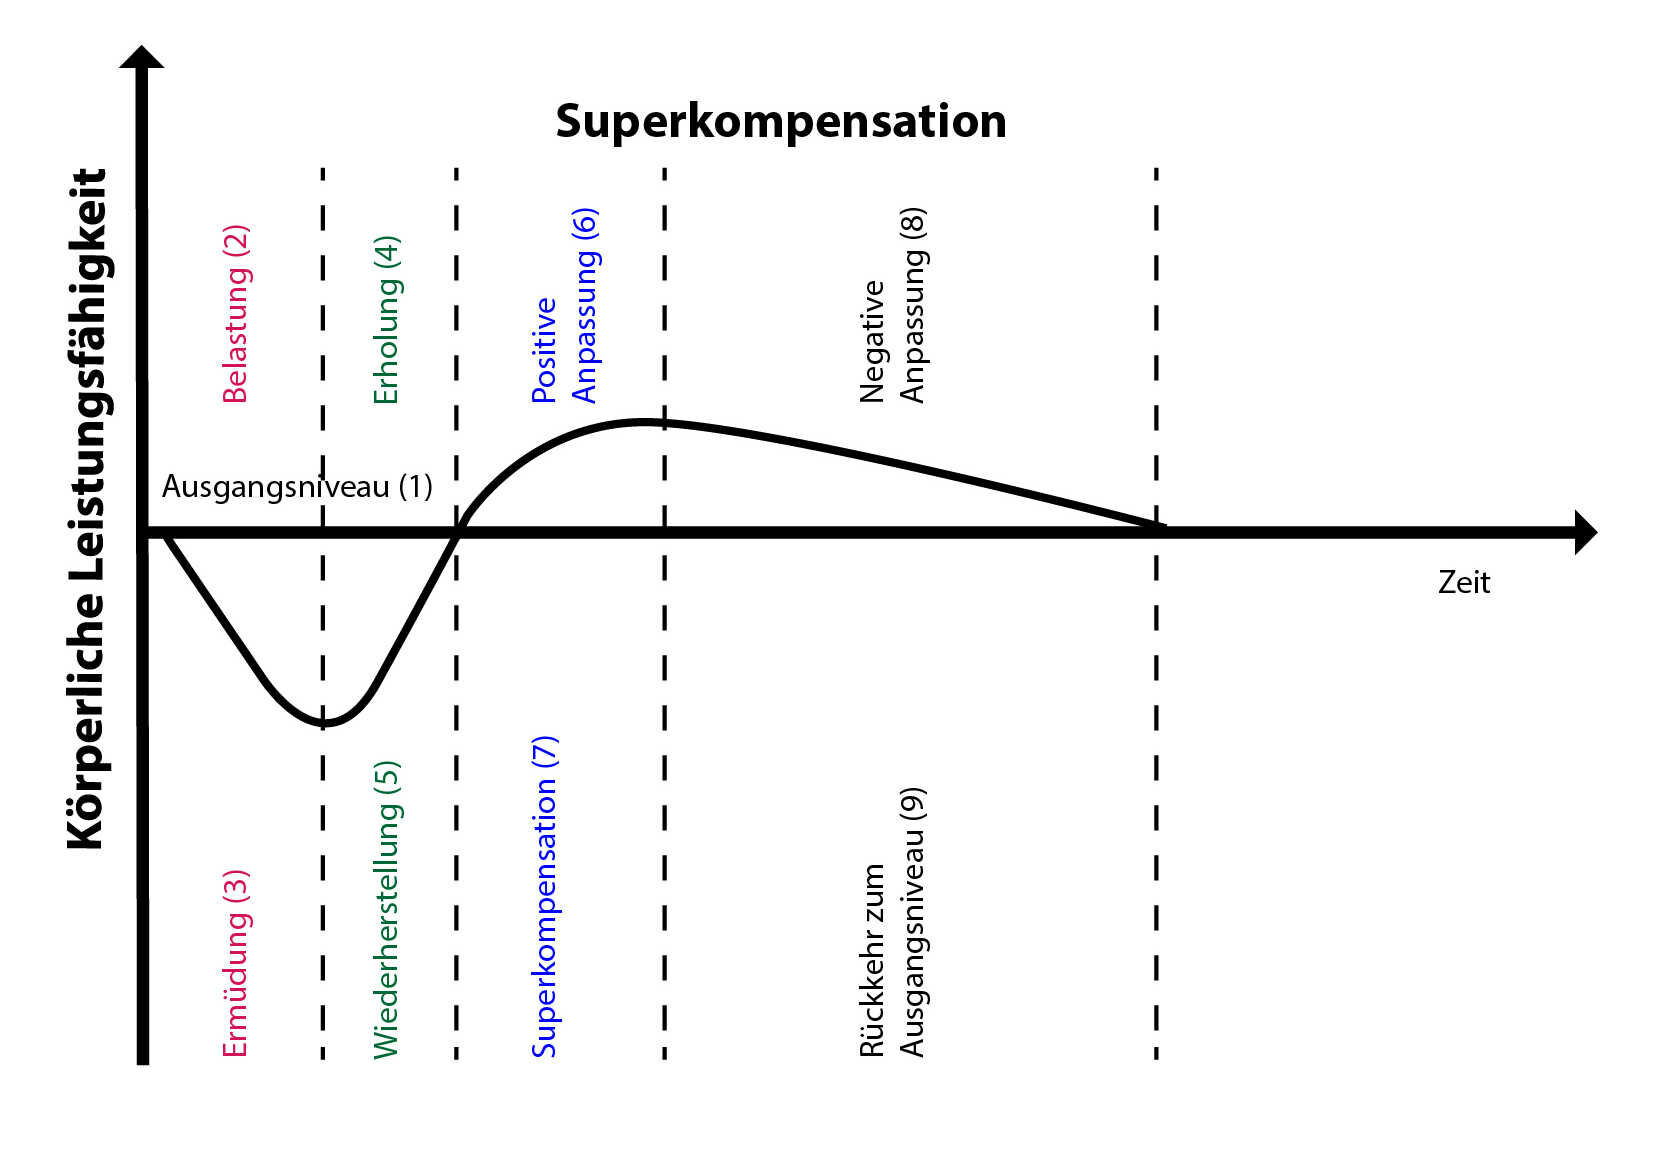 4 Stufen-Modell der Superkompensation